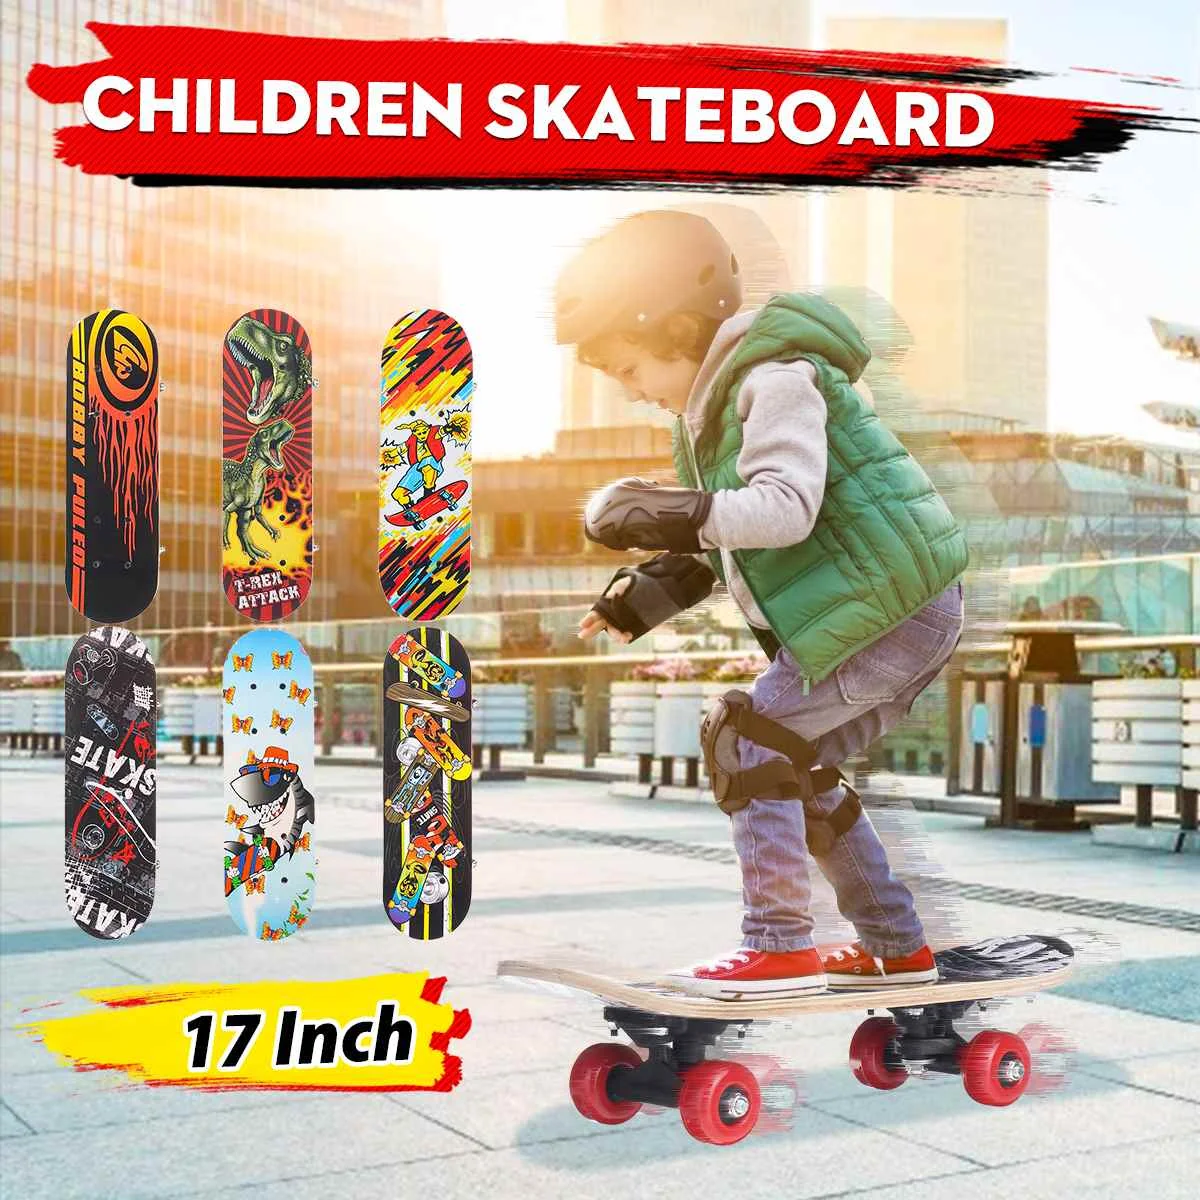 

17inch Kids Children Cartoon Skateboard Maple Wood Double Rocker Deck Skate Board Four Wheels Longboard Skateboard 43*10cm Deck